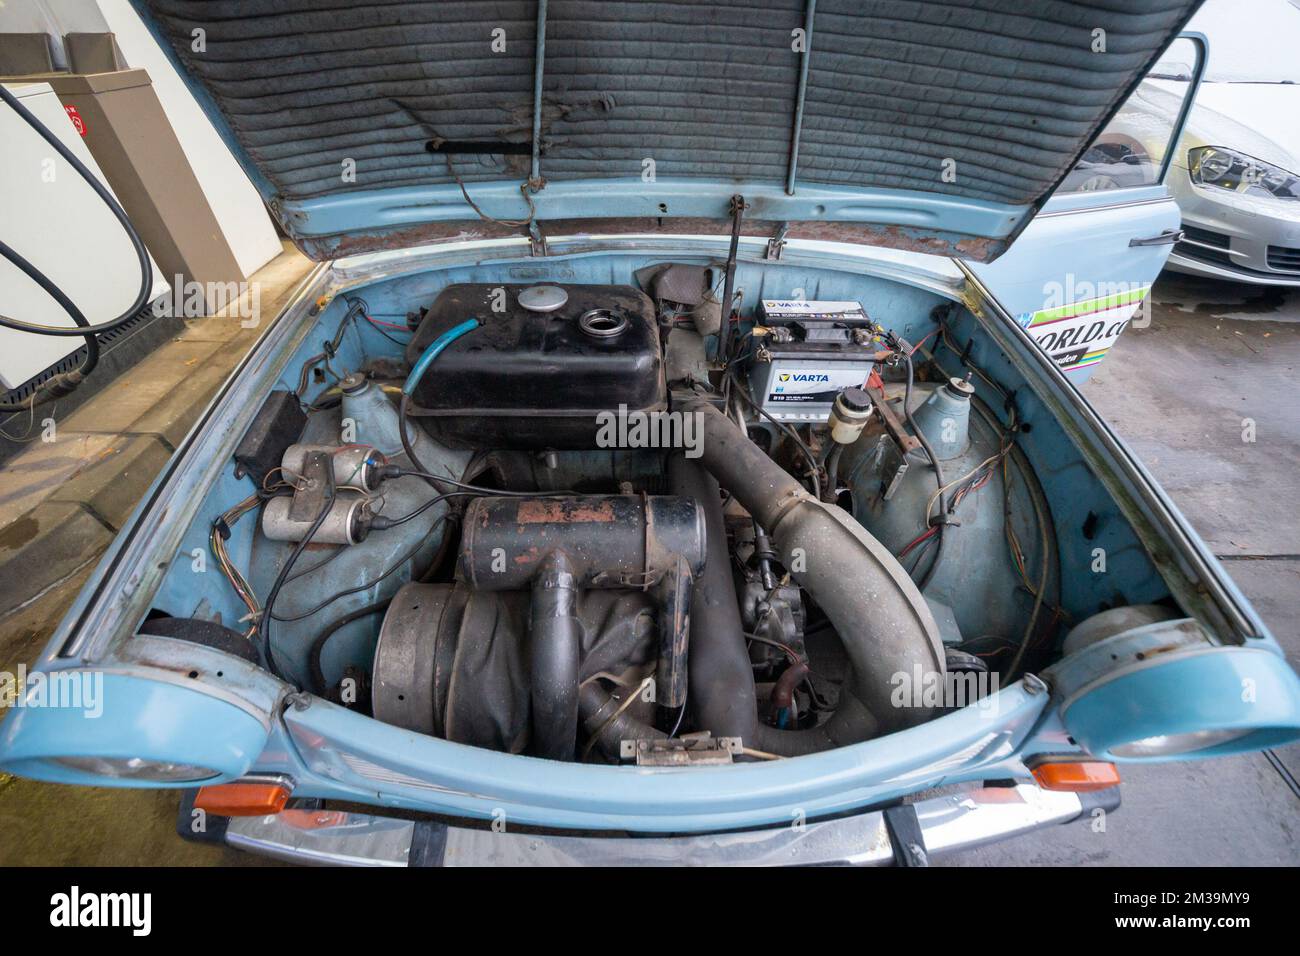 Compartimento del motor Trabant, que muestra el motor de dos tiempos, el depósito de combustible y los componentes electrónicos asociados Foto de stock